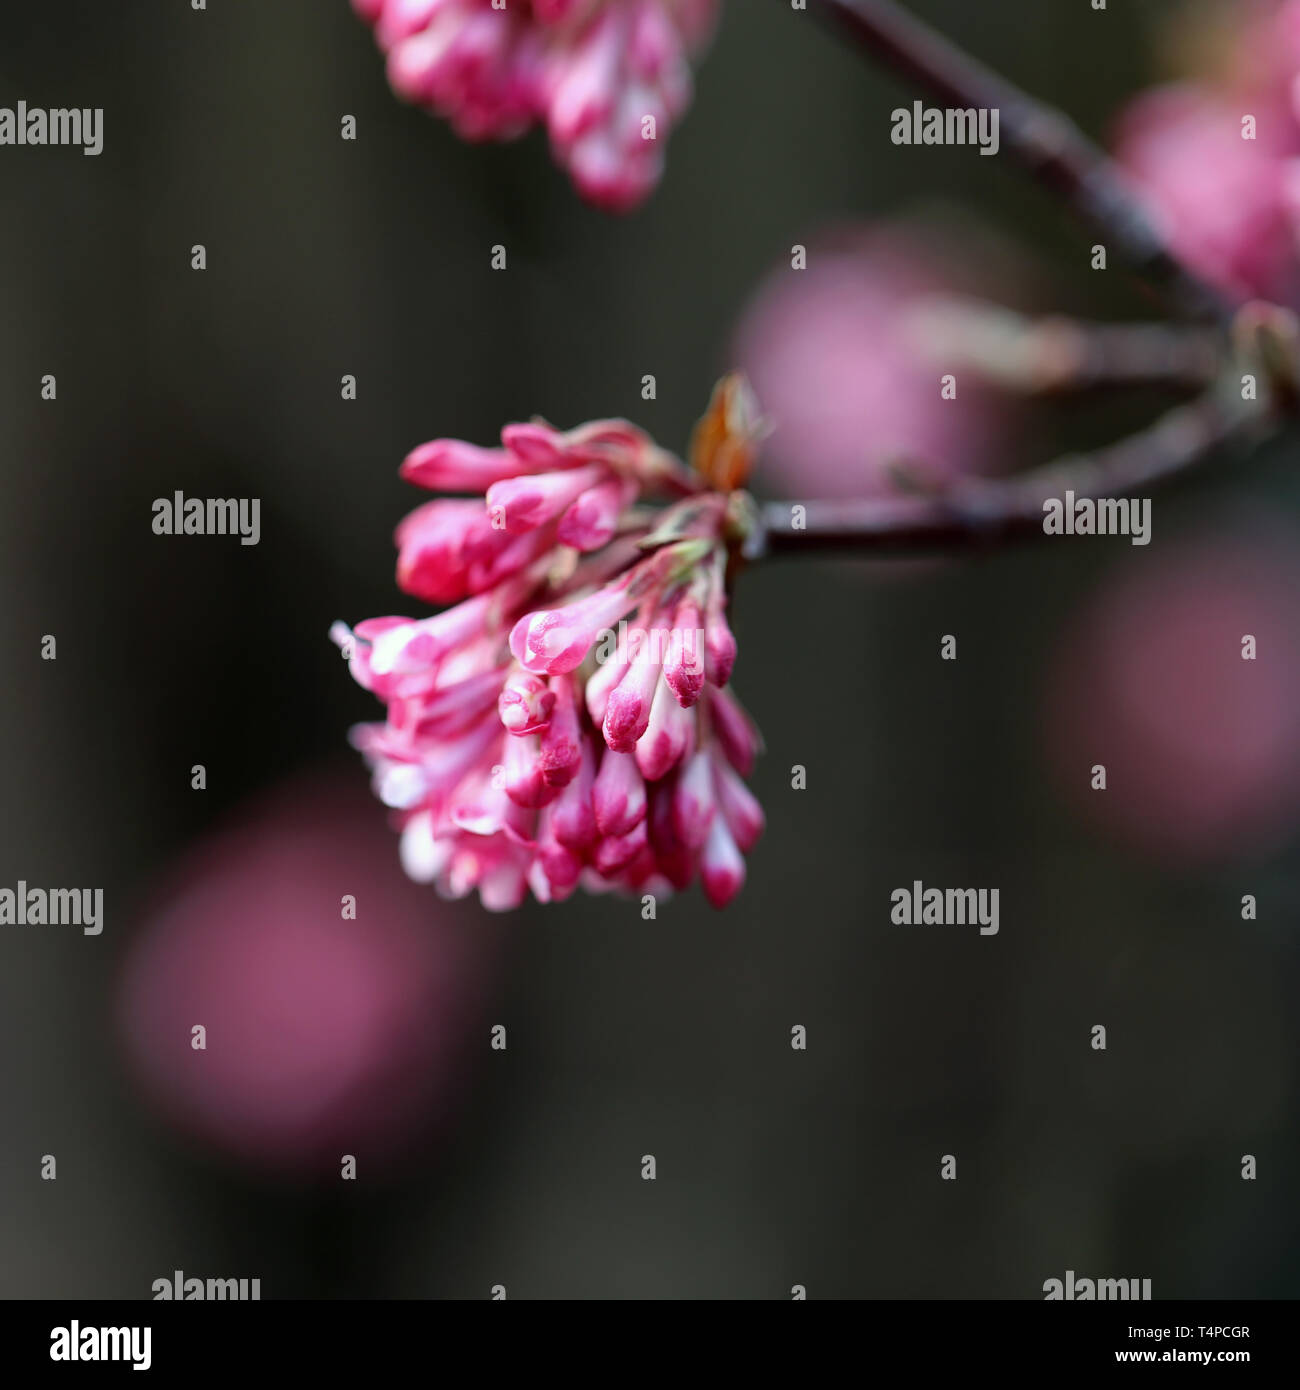 Schön, weiblich und romantischen kleinen rosa Blüten in Nyon, Schweiz  fotografiert. Diese niedlichen kleinen Blumen mit Makro Objektiv  fotografiert Stockfotografie - Alamy